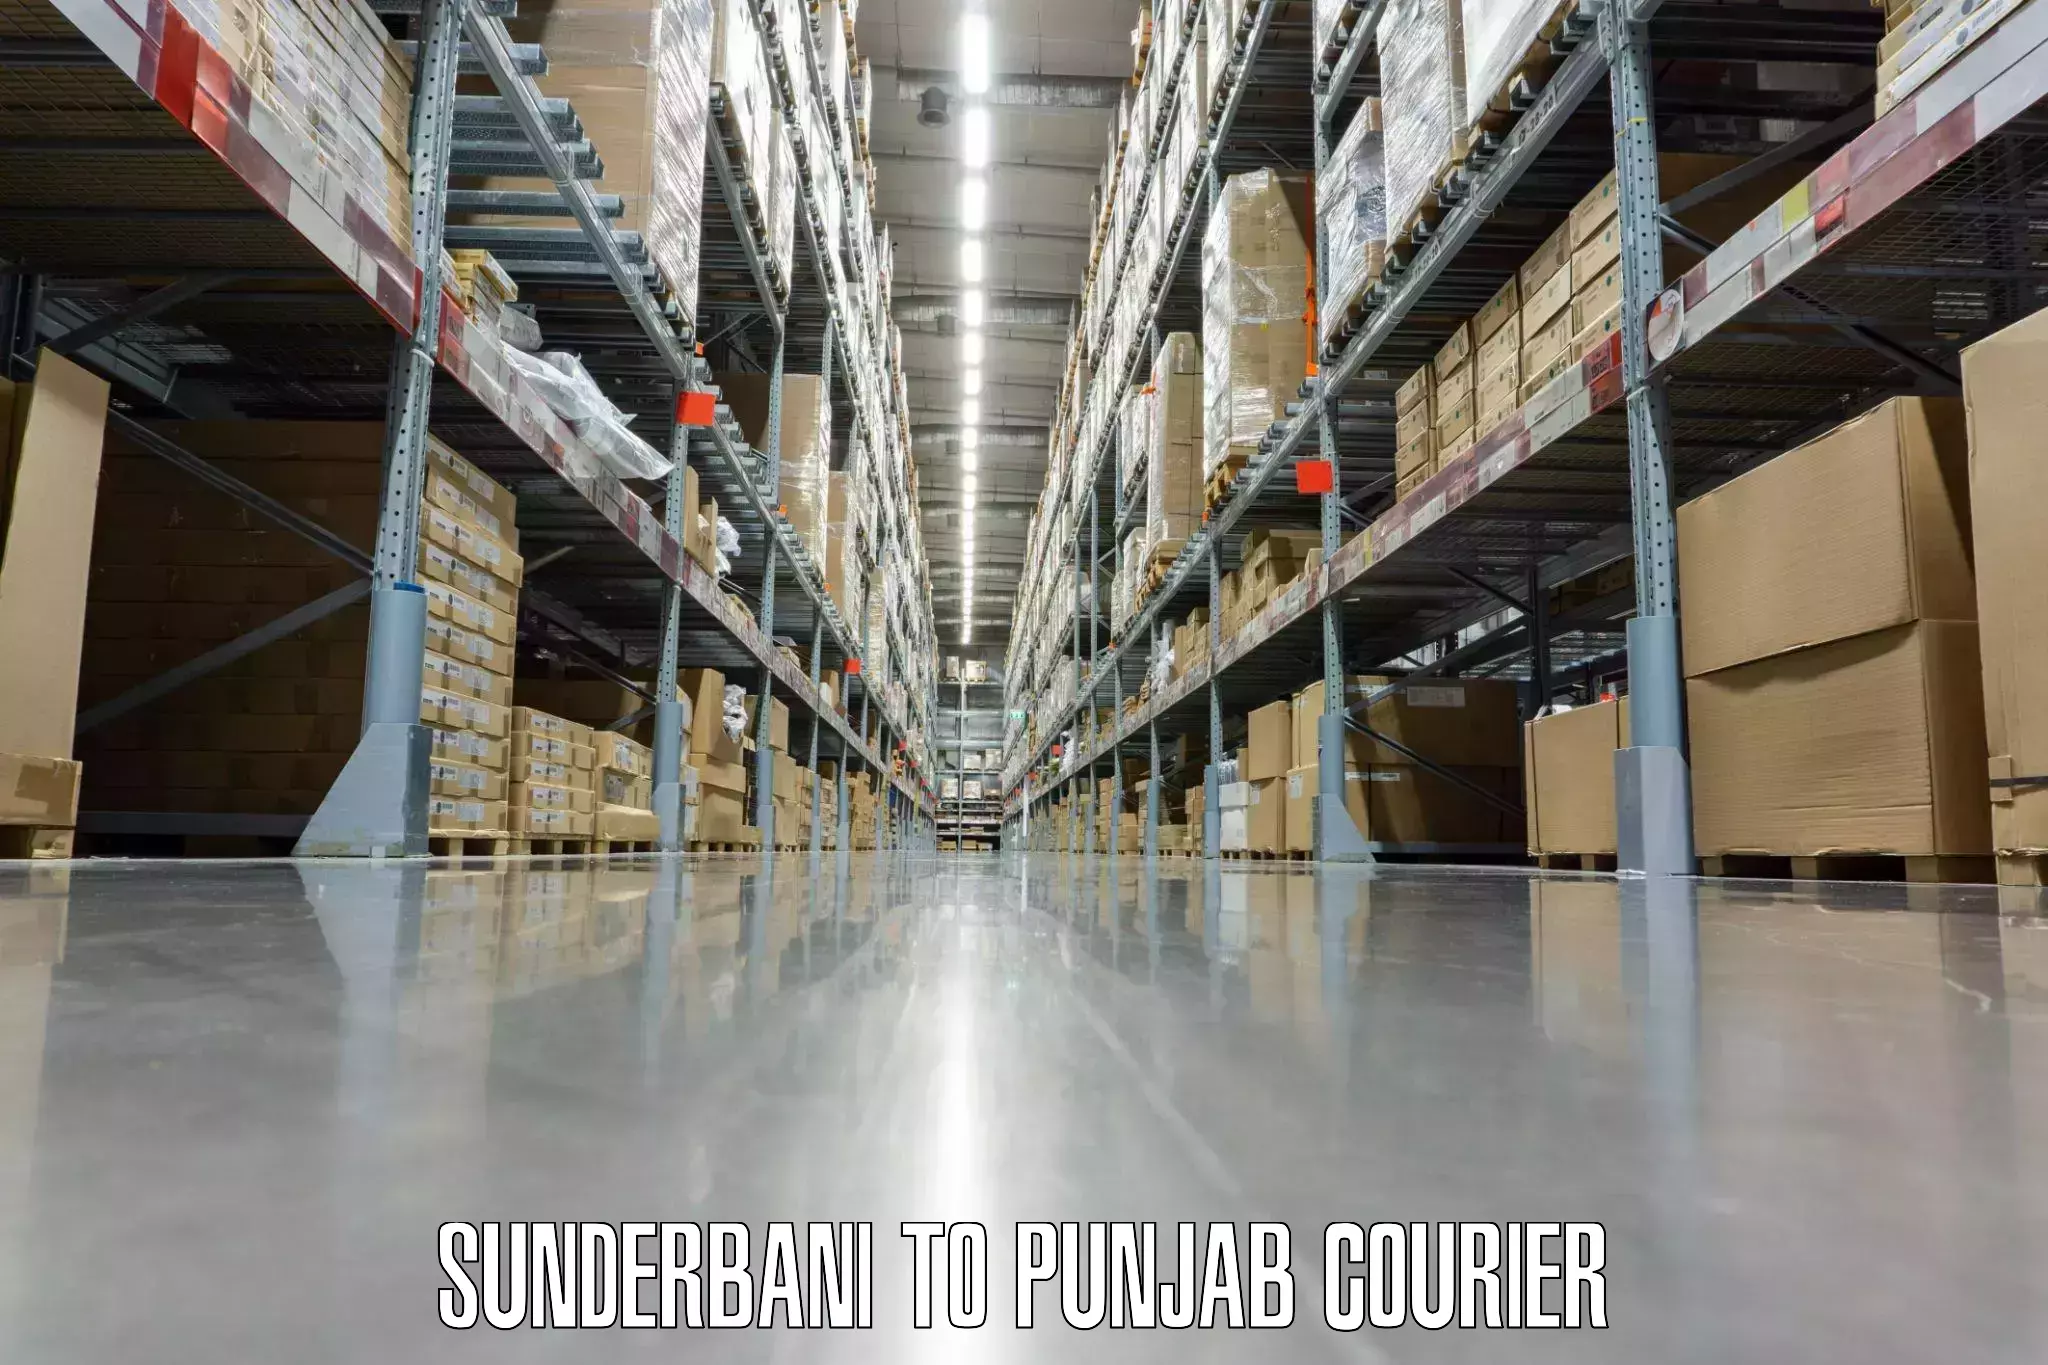 Luggage shipment specialists Sunderbani to Punjab